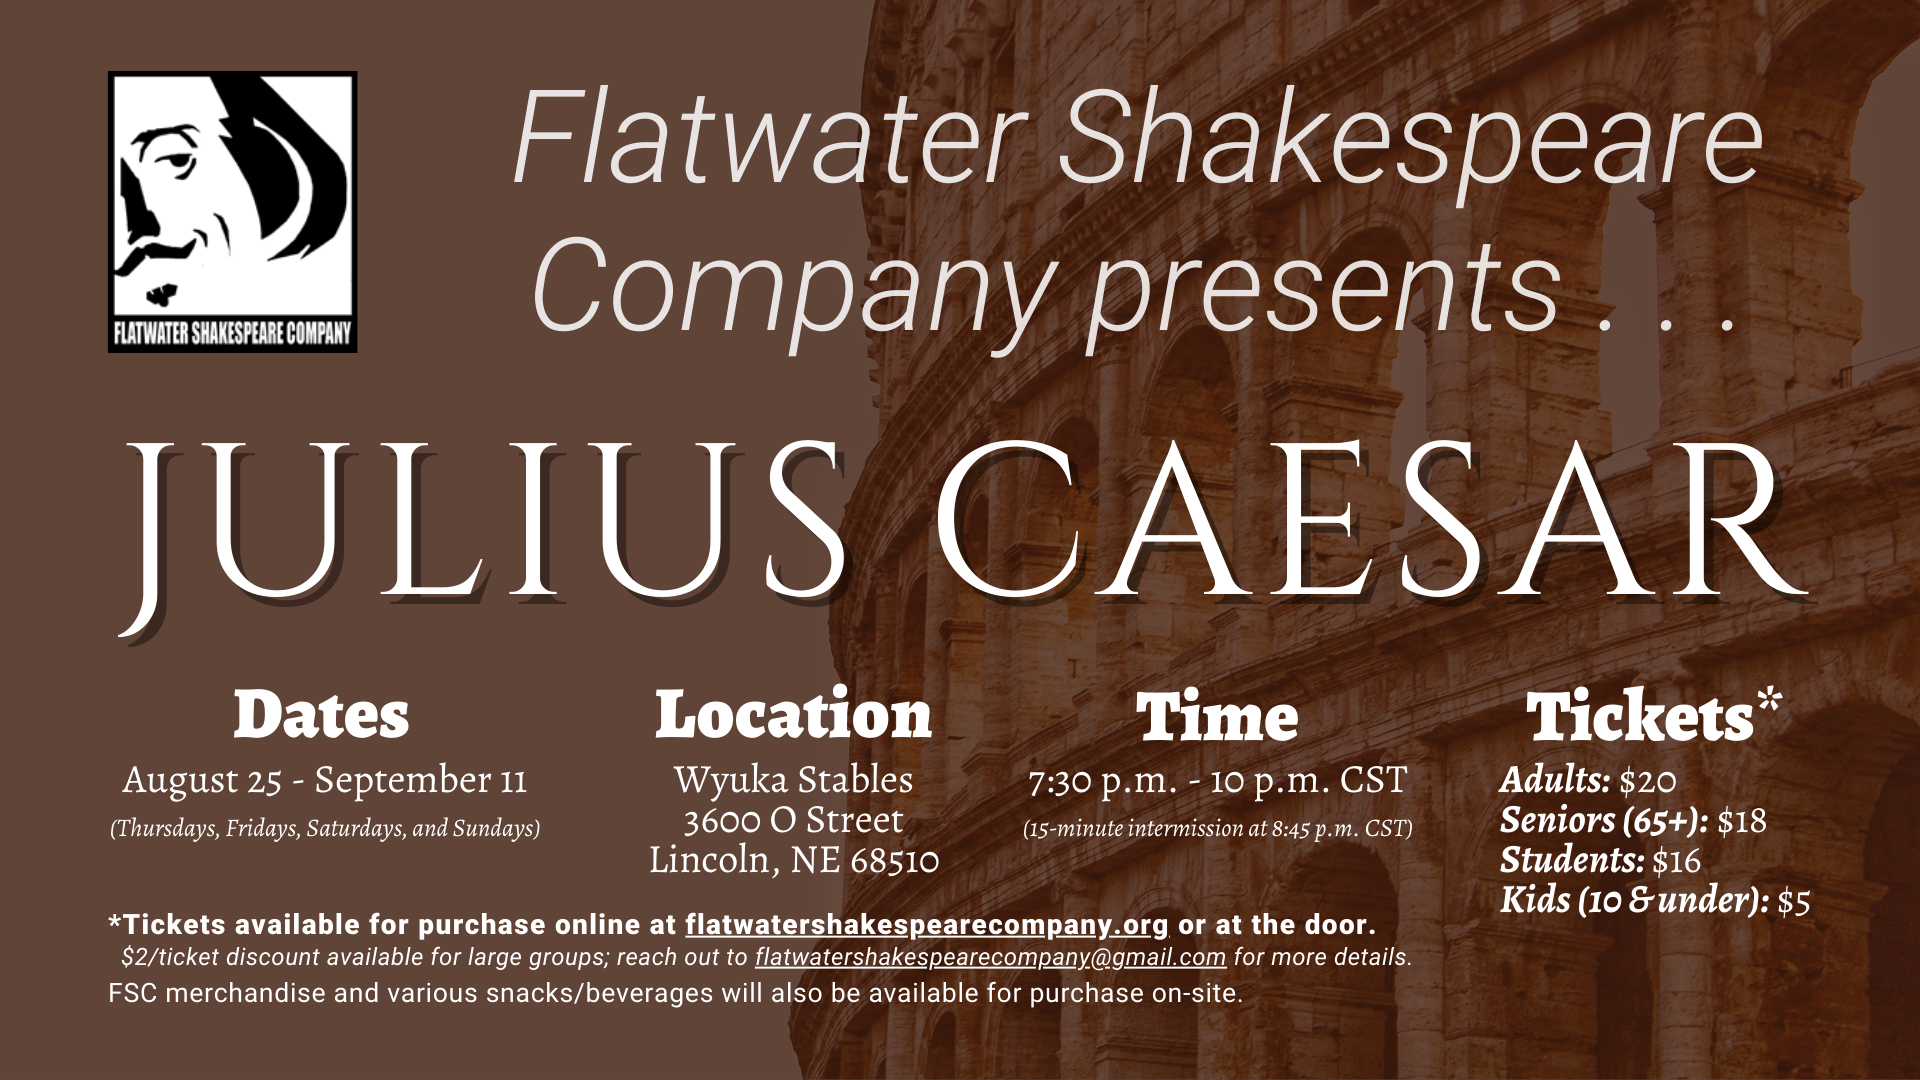 #07STU –– STUDENT: Sat. Sept. 3, 2022 | 7:30 p.m. - 10 p.m. CST | Wyuka Stables (Julius Caesar)